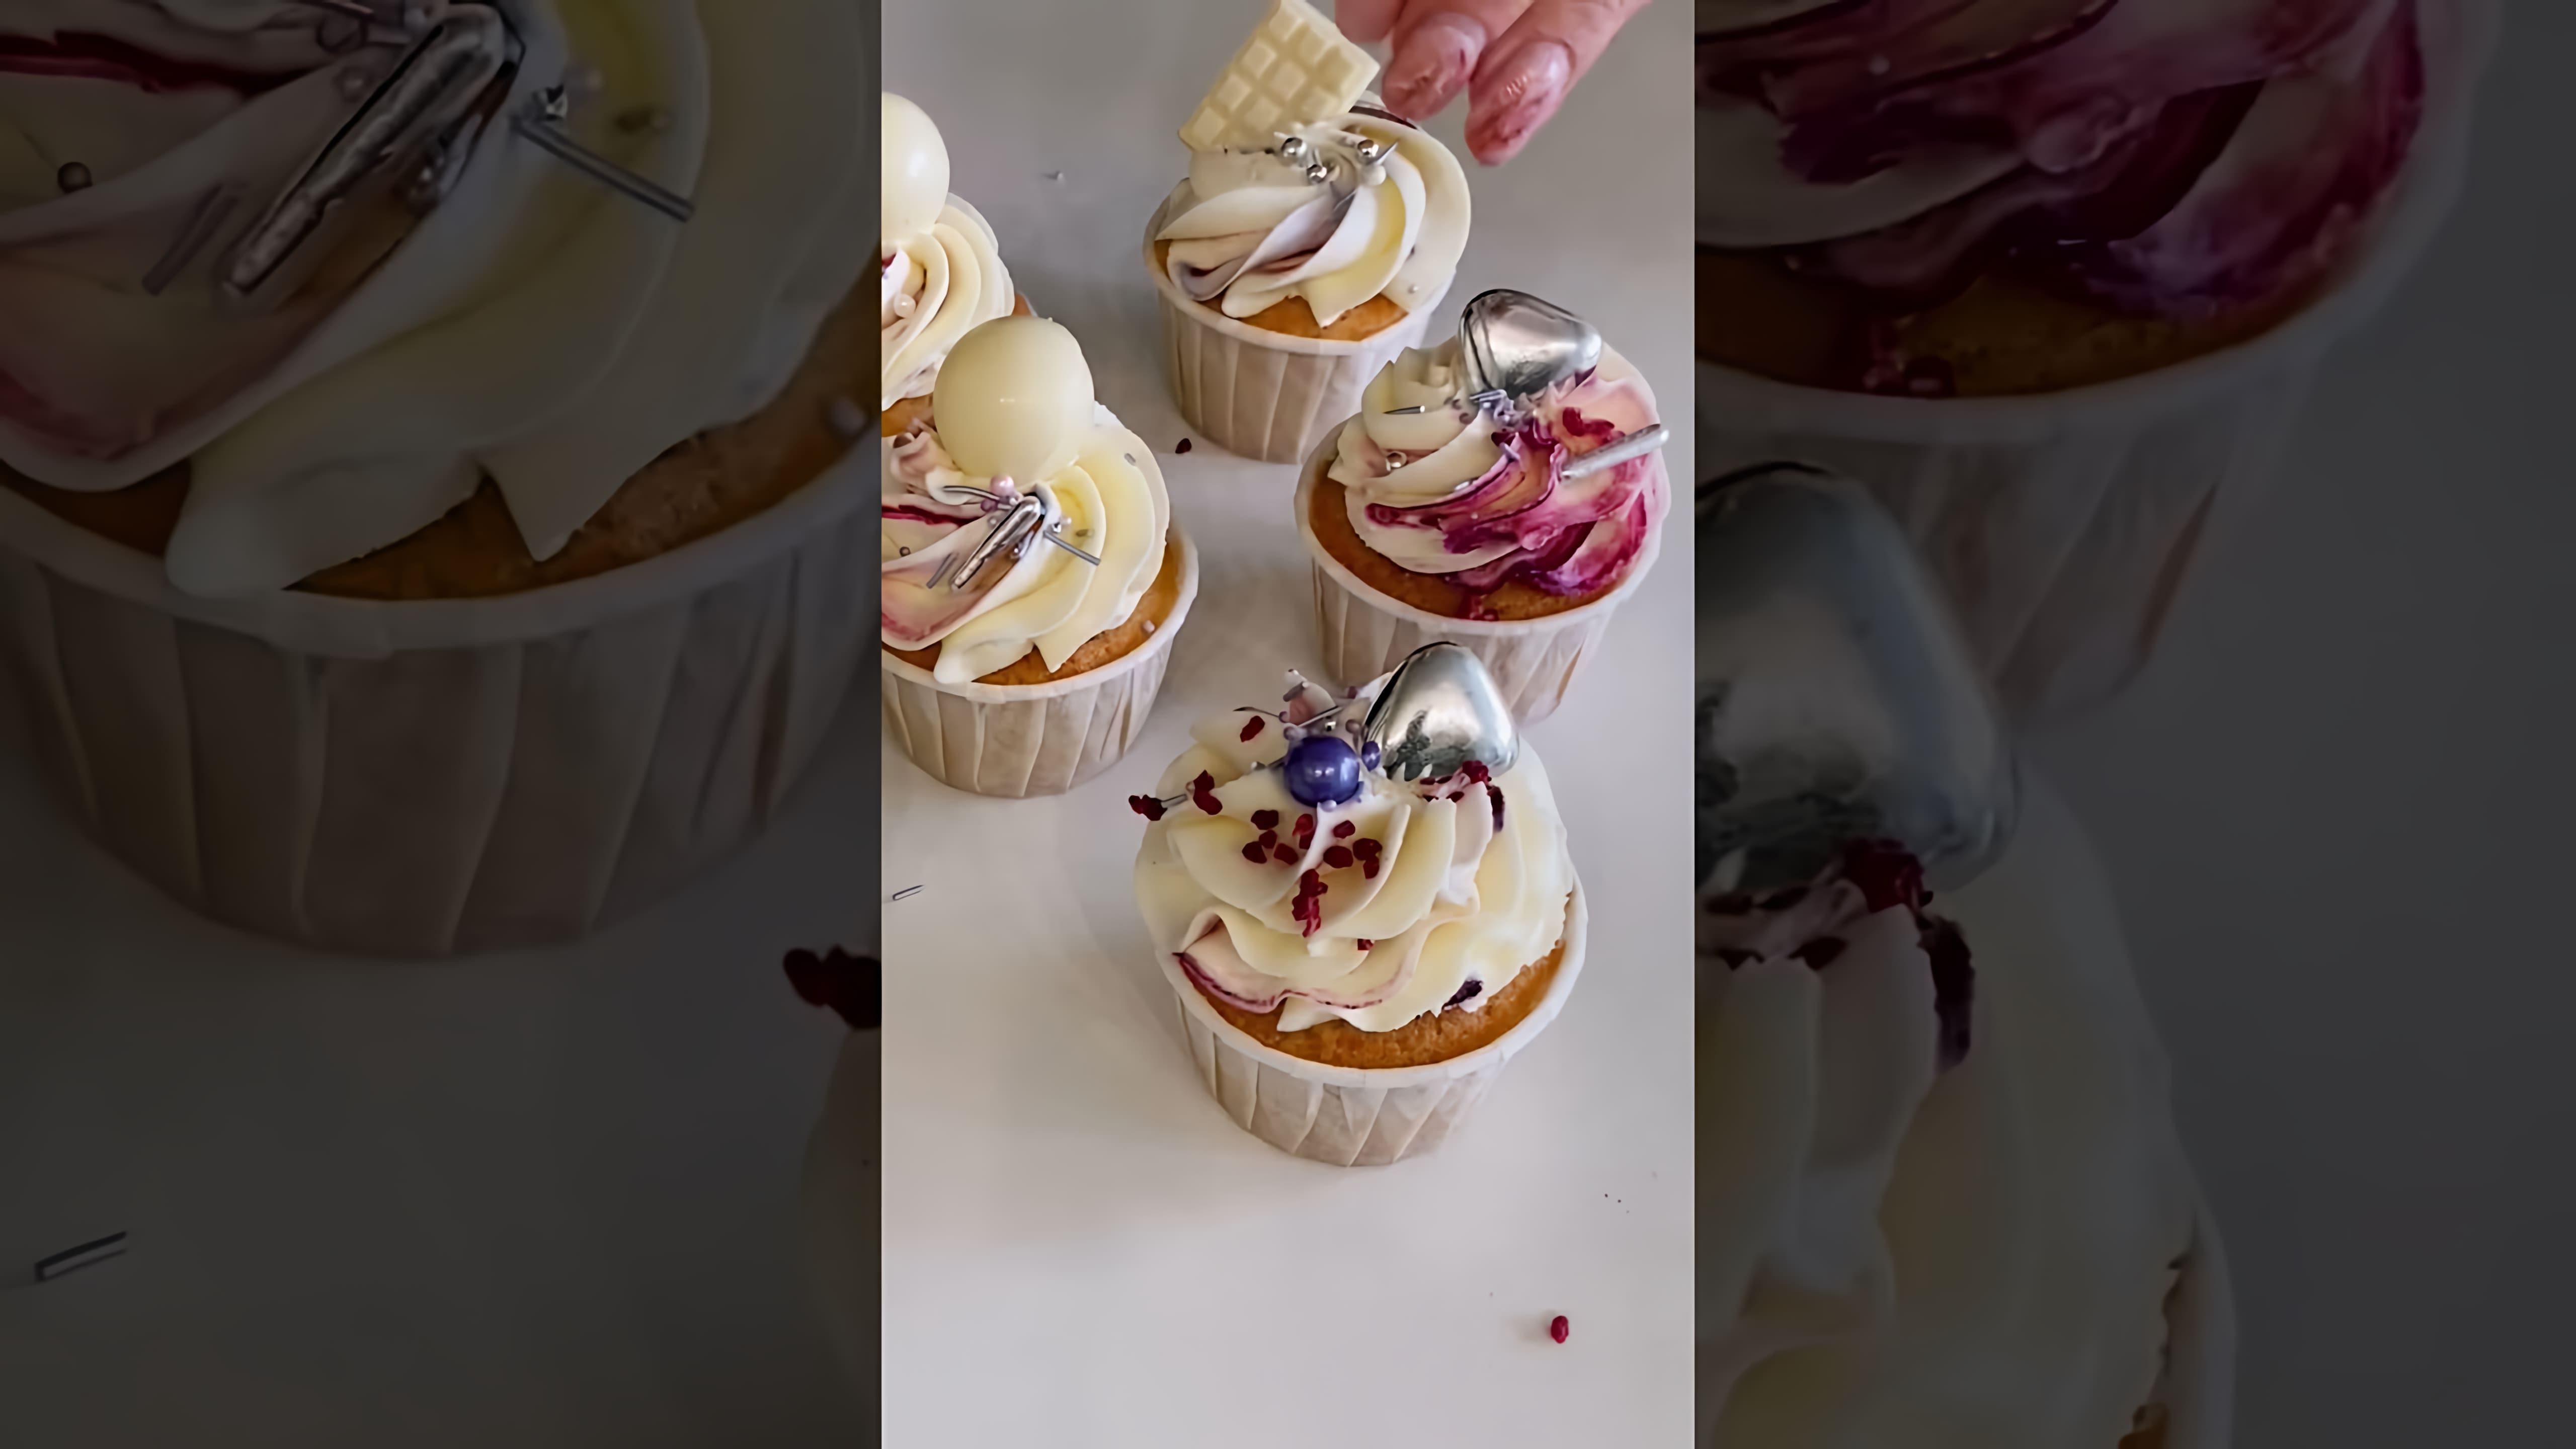 В этом видео демонстрируется рецепт стойкого крема для капкейков и тортов